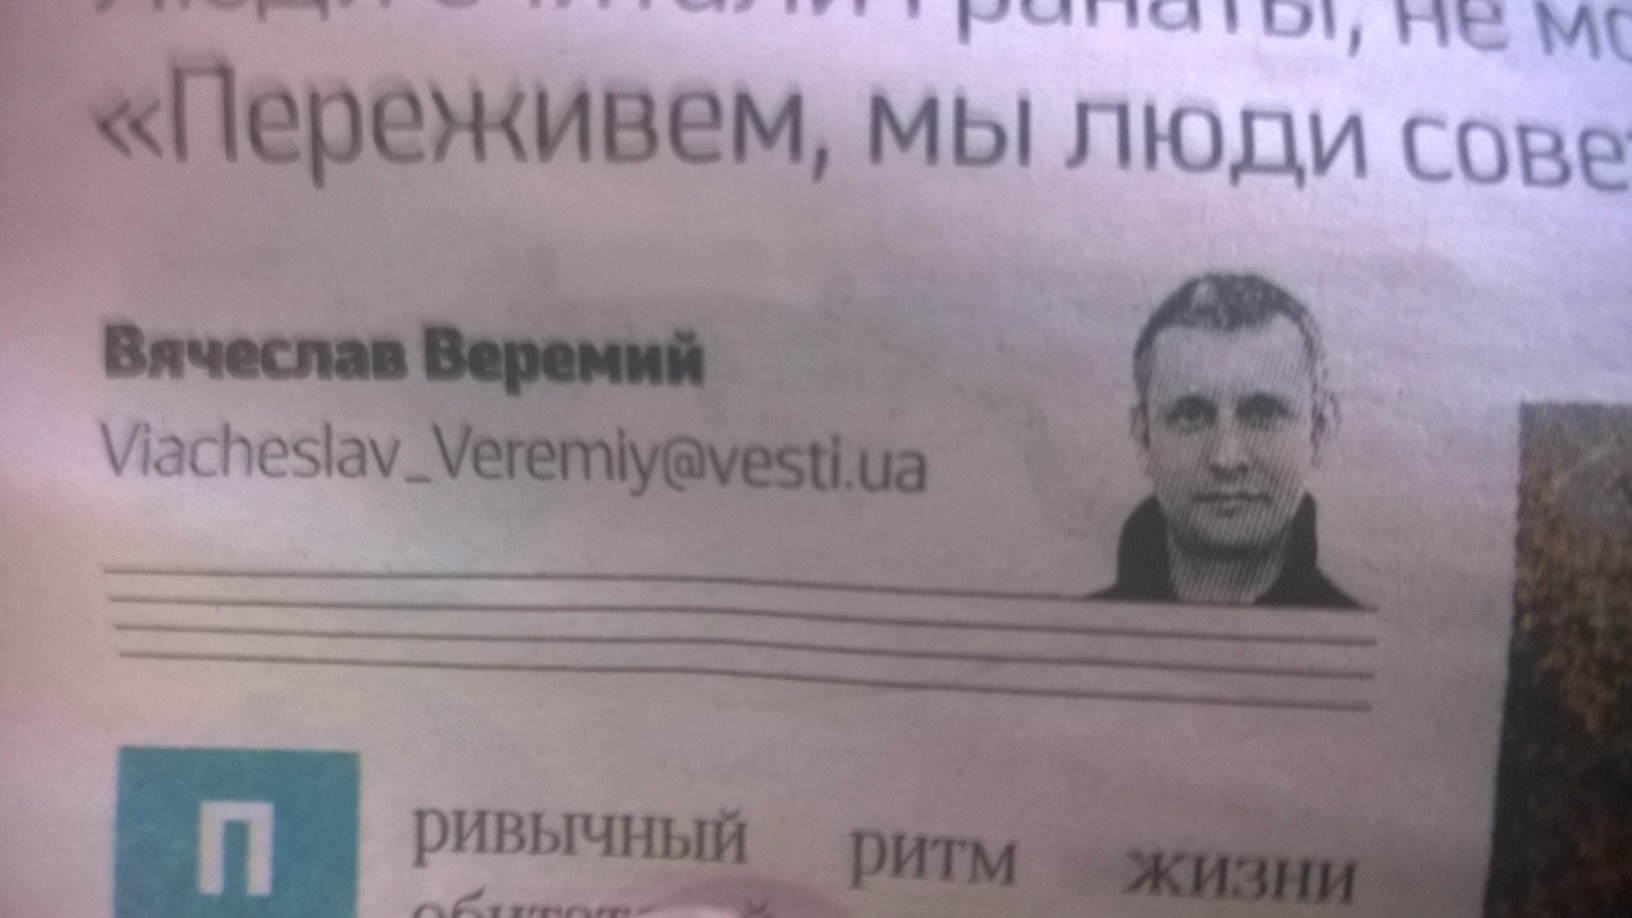 Ukrainischer Journalist Wjatscheslaw Weremyj von der Zeitung Vesti ermordet